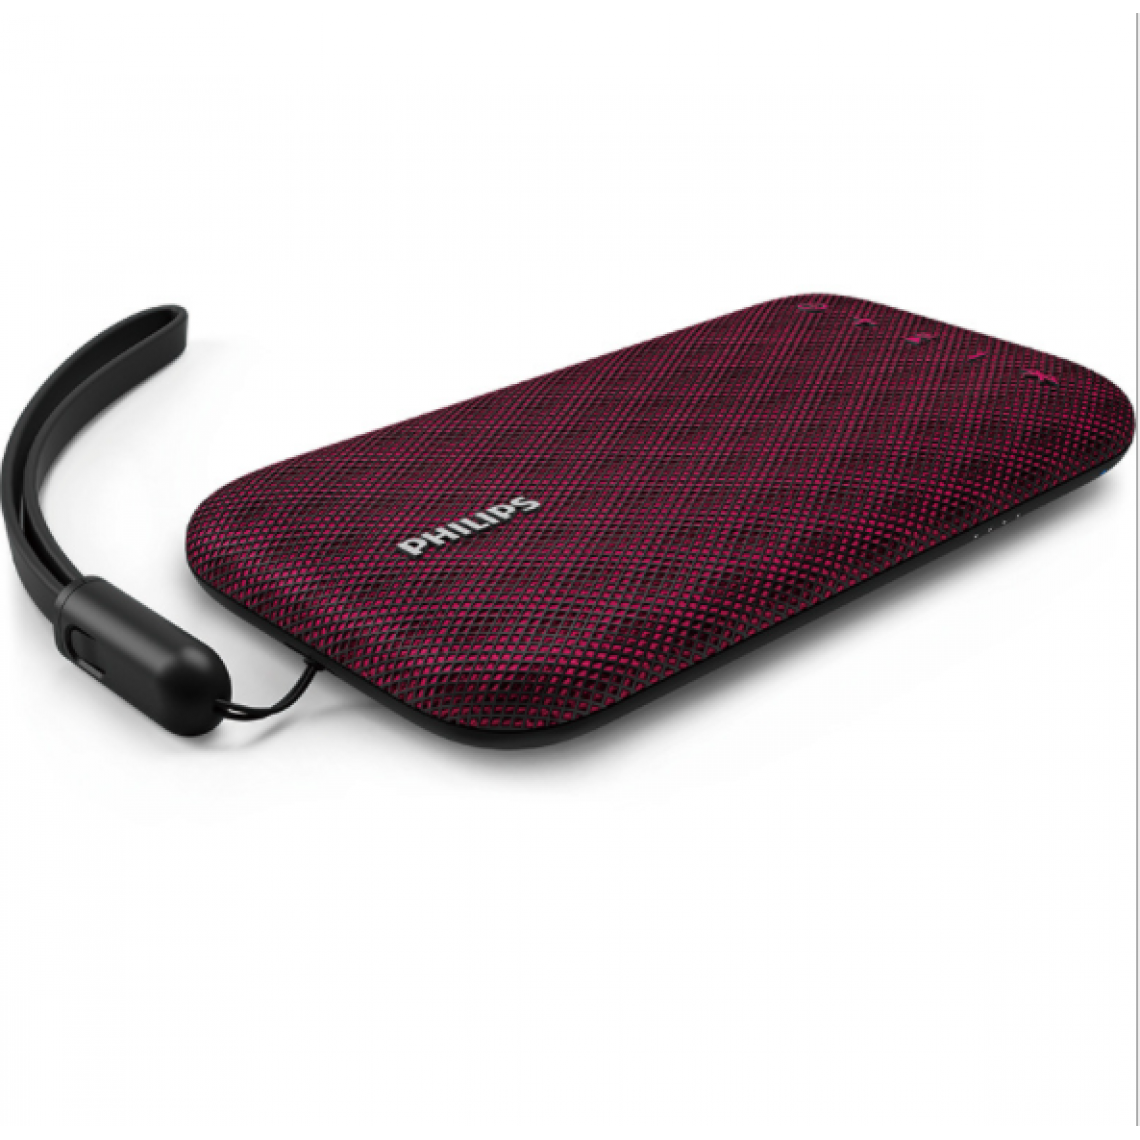 Chrono - Le haut-parleur Bluetooth sans fil Philips BT3900W est étanche et antichoc, avec sangle USB, microphone, fort et design(Violet) - Enceinte PC